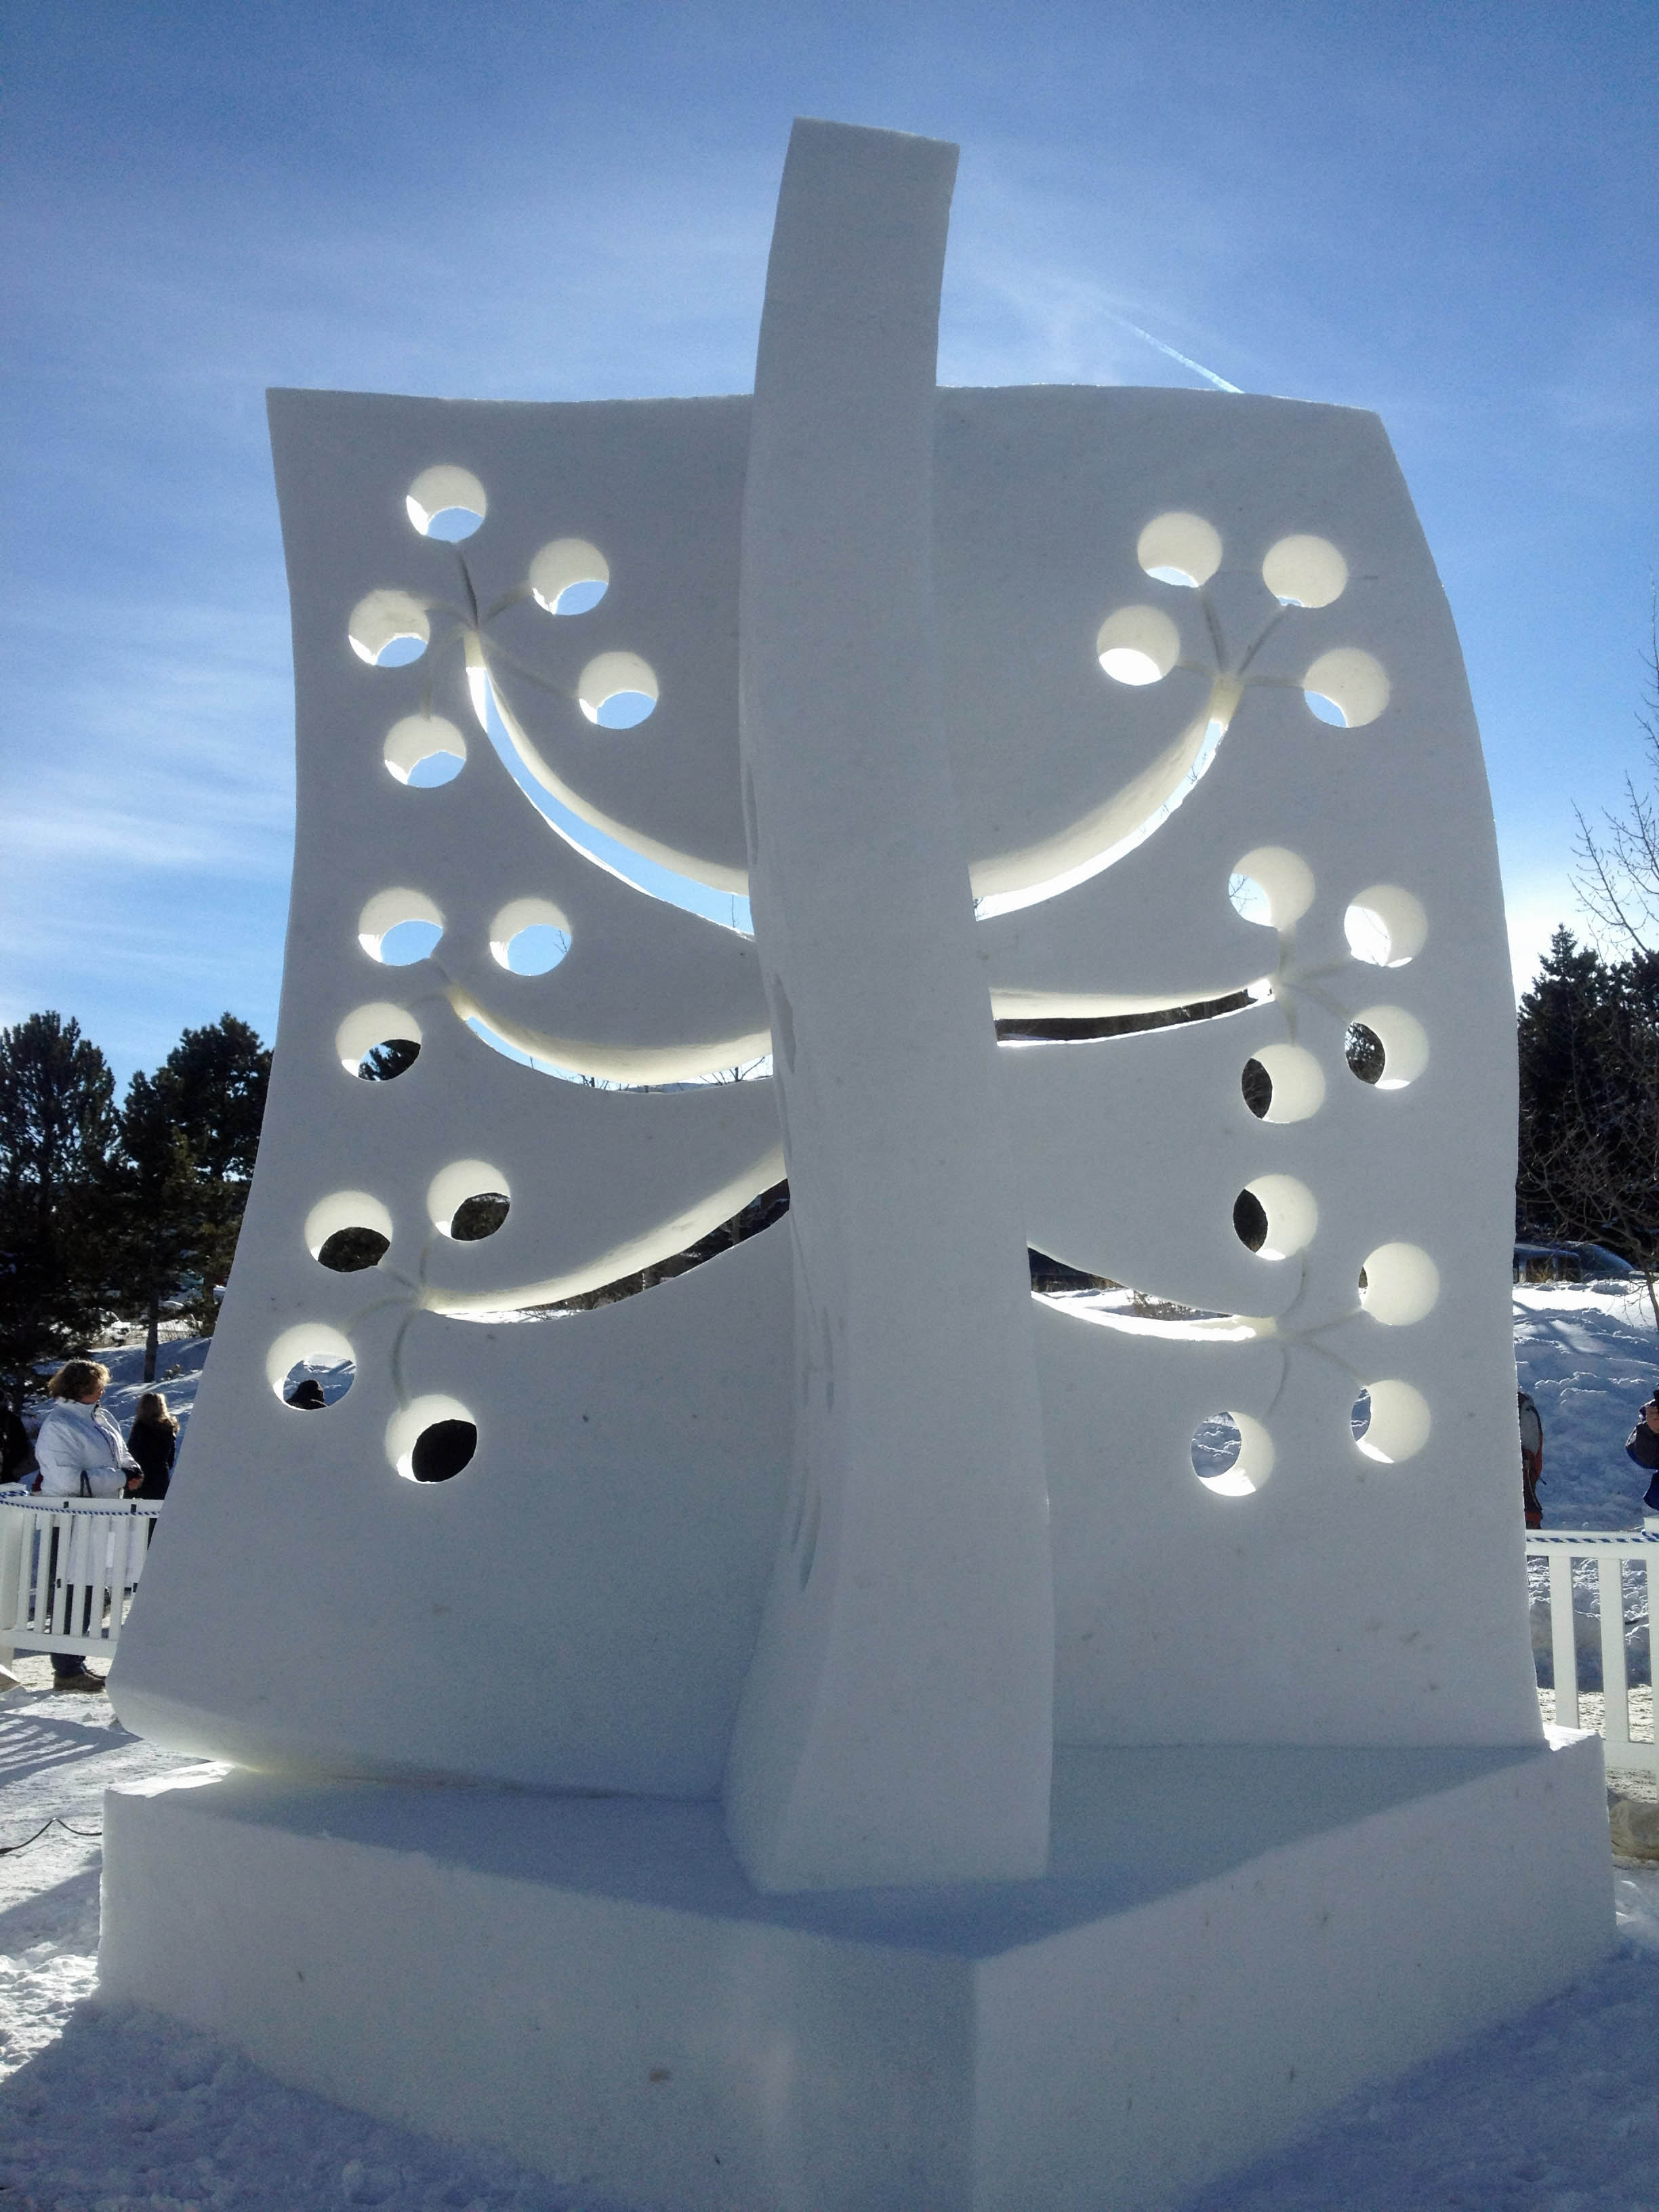 breckenridge_international_snow_sculpture_championships_team_finland_sculpture_3264